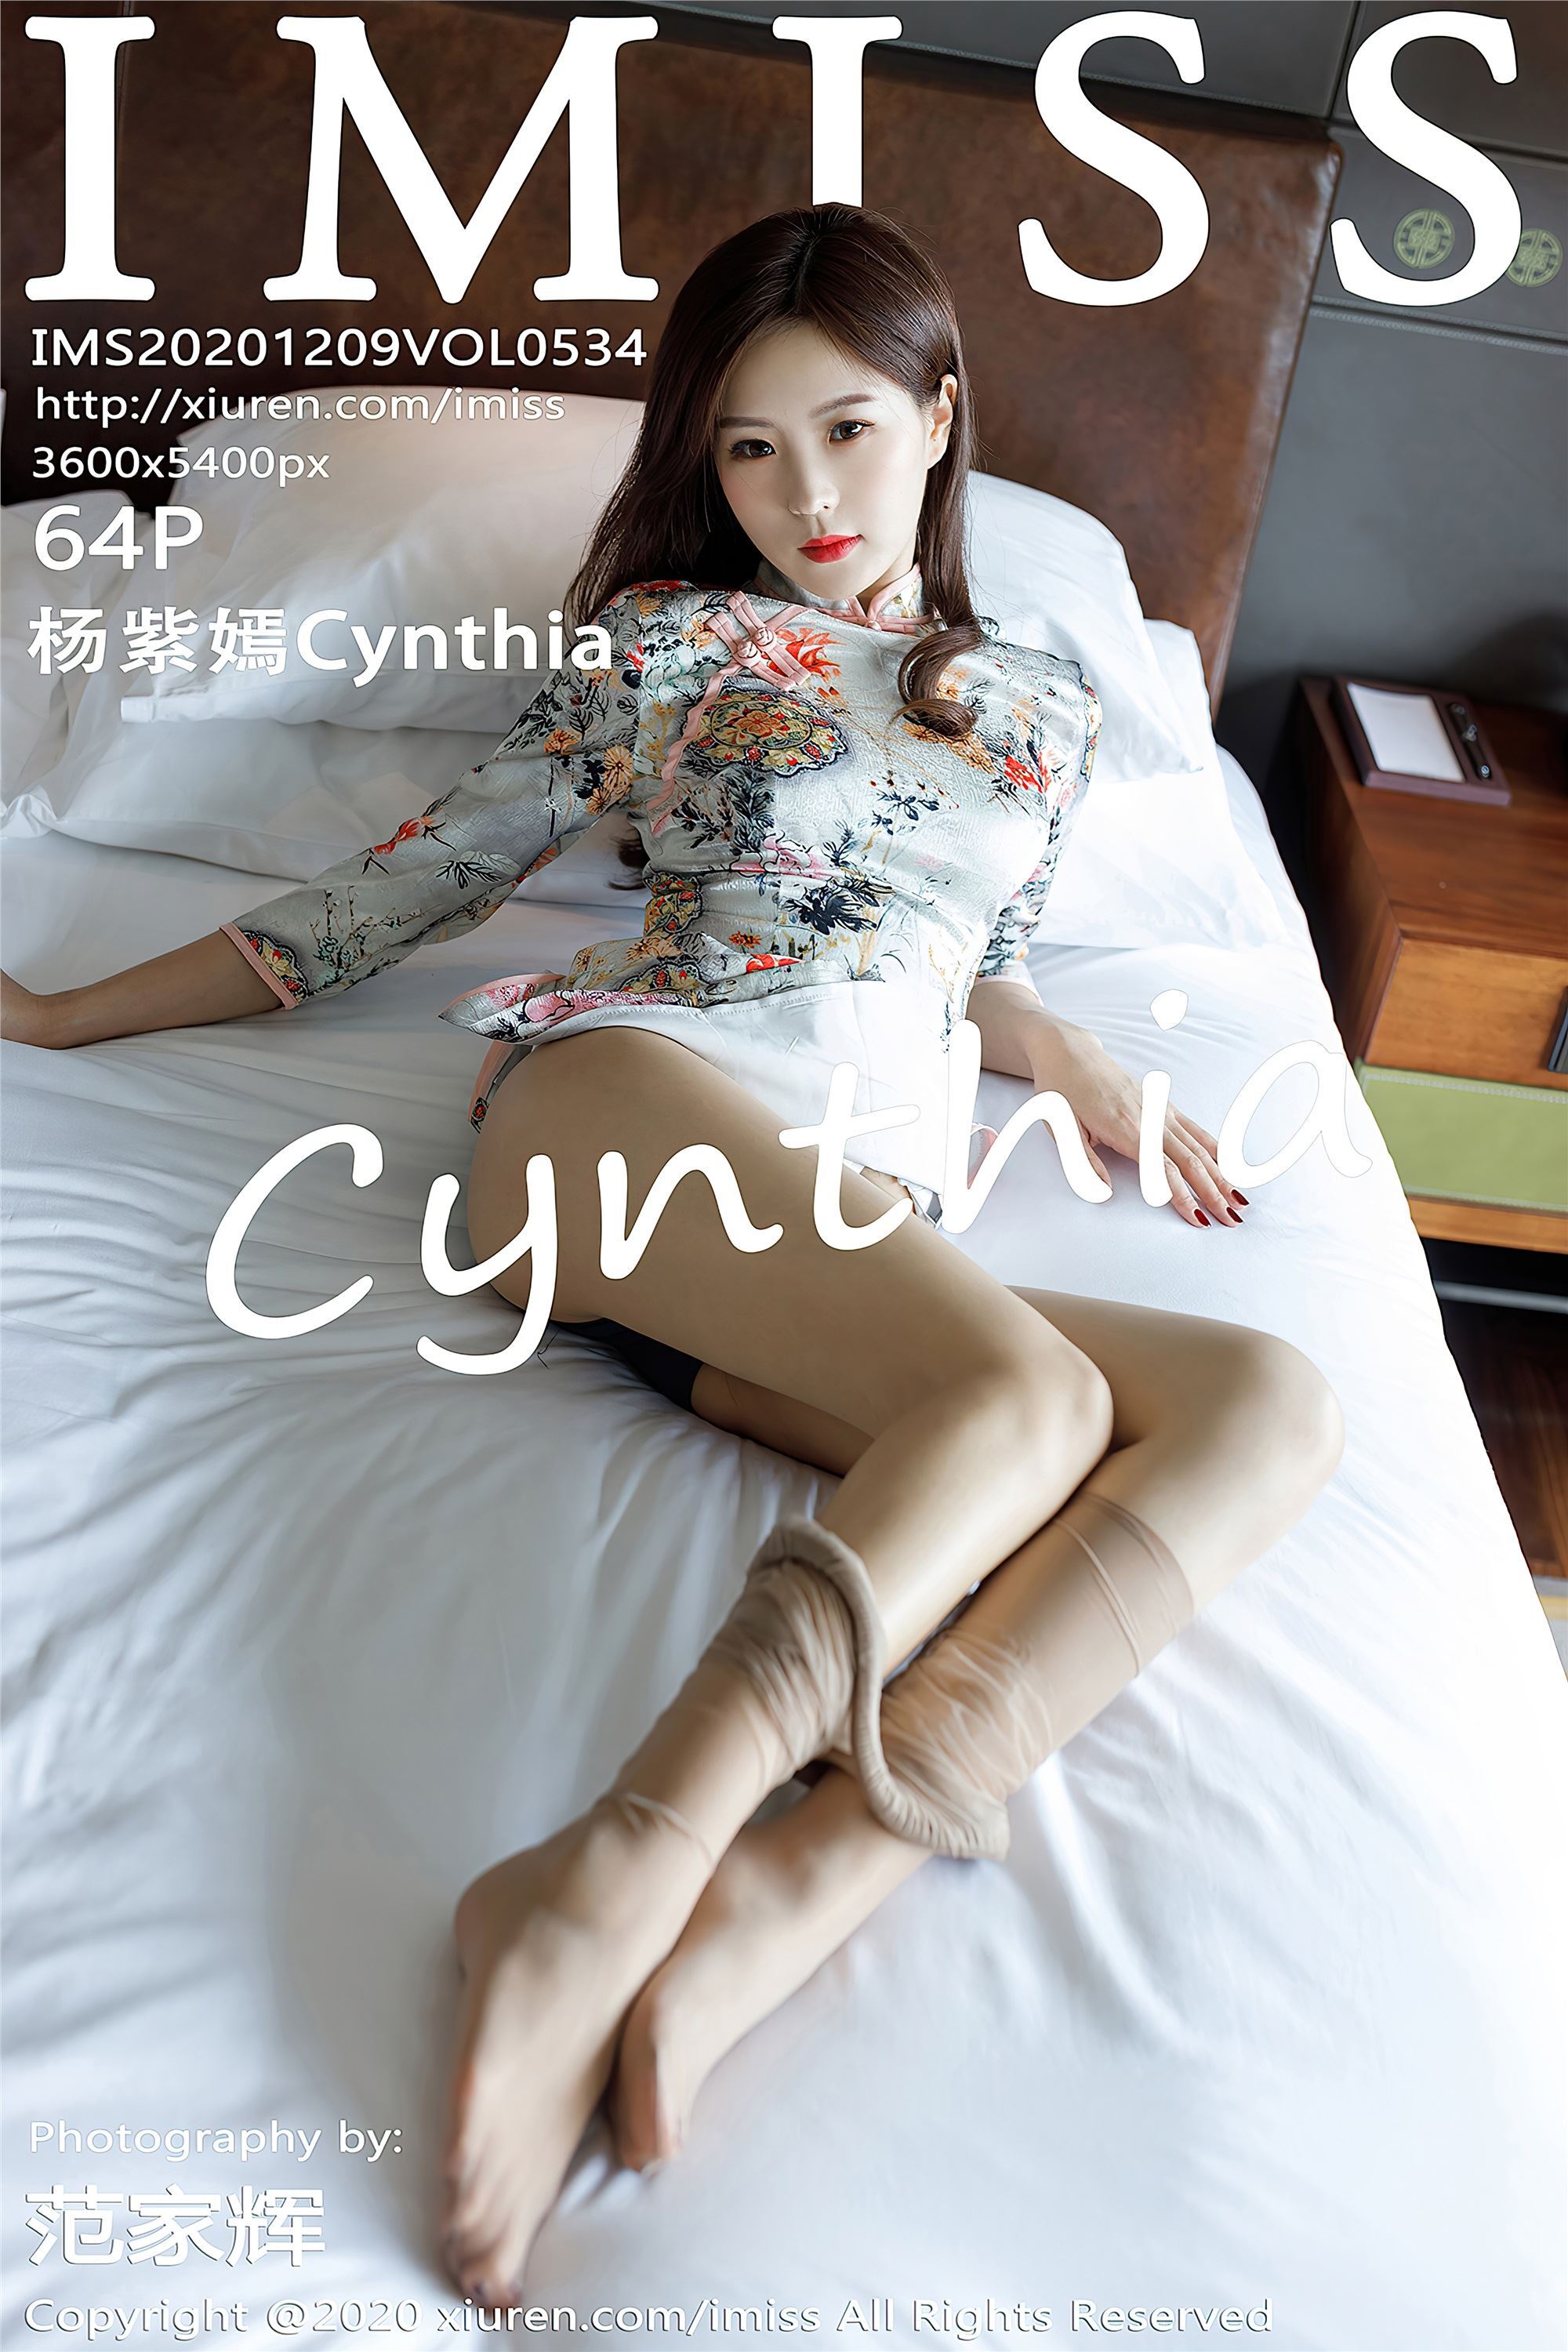 Imiss amiss 2020.12.09 vol.534 Yang Ziyan Cynthia